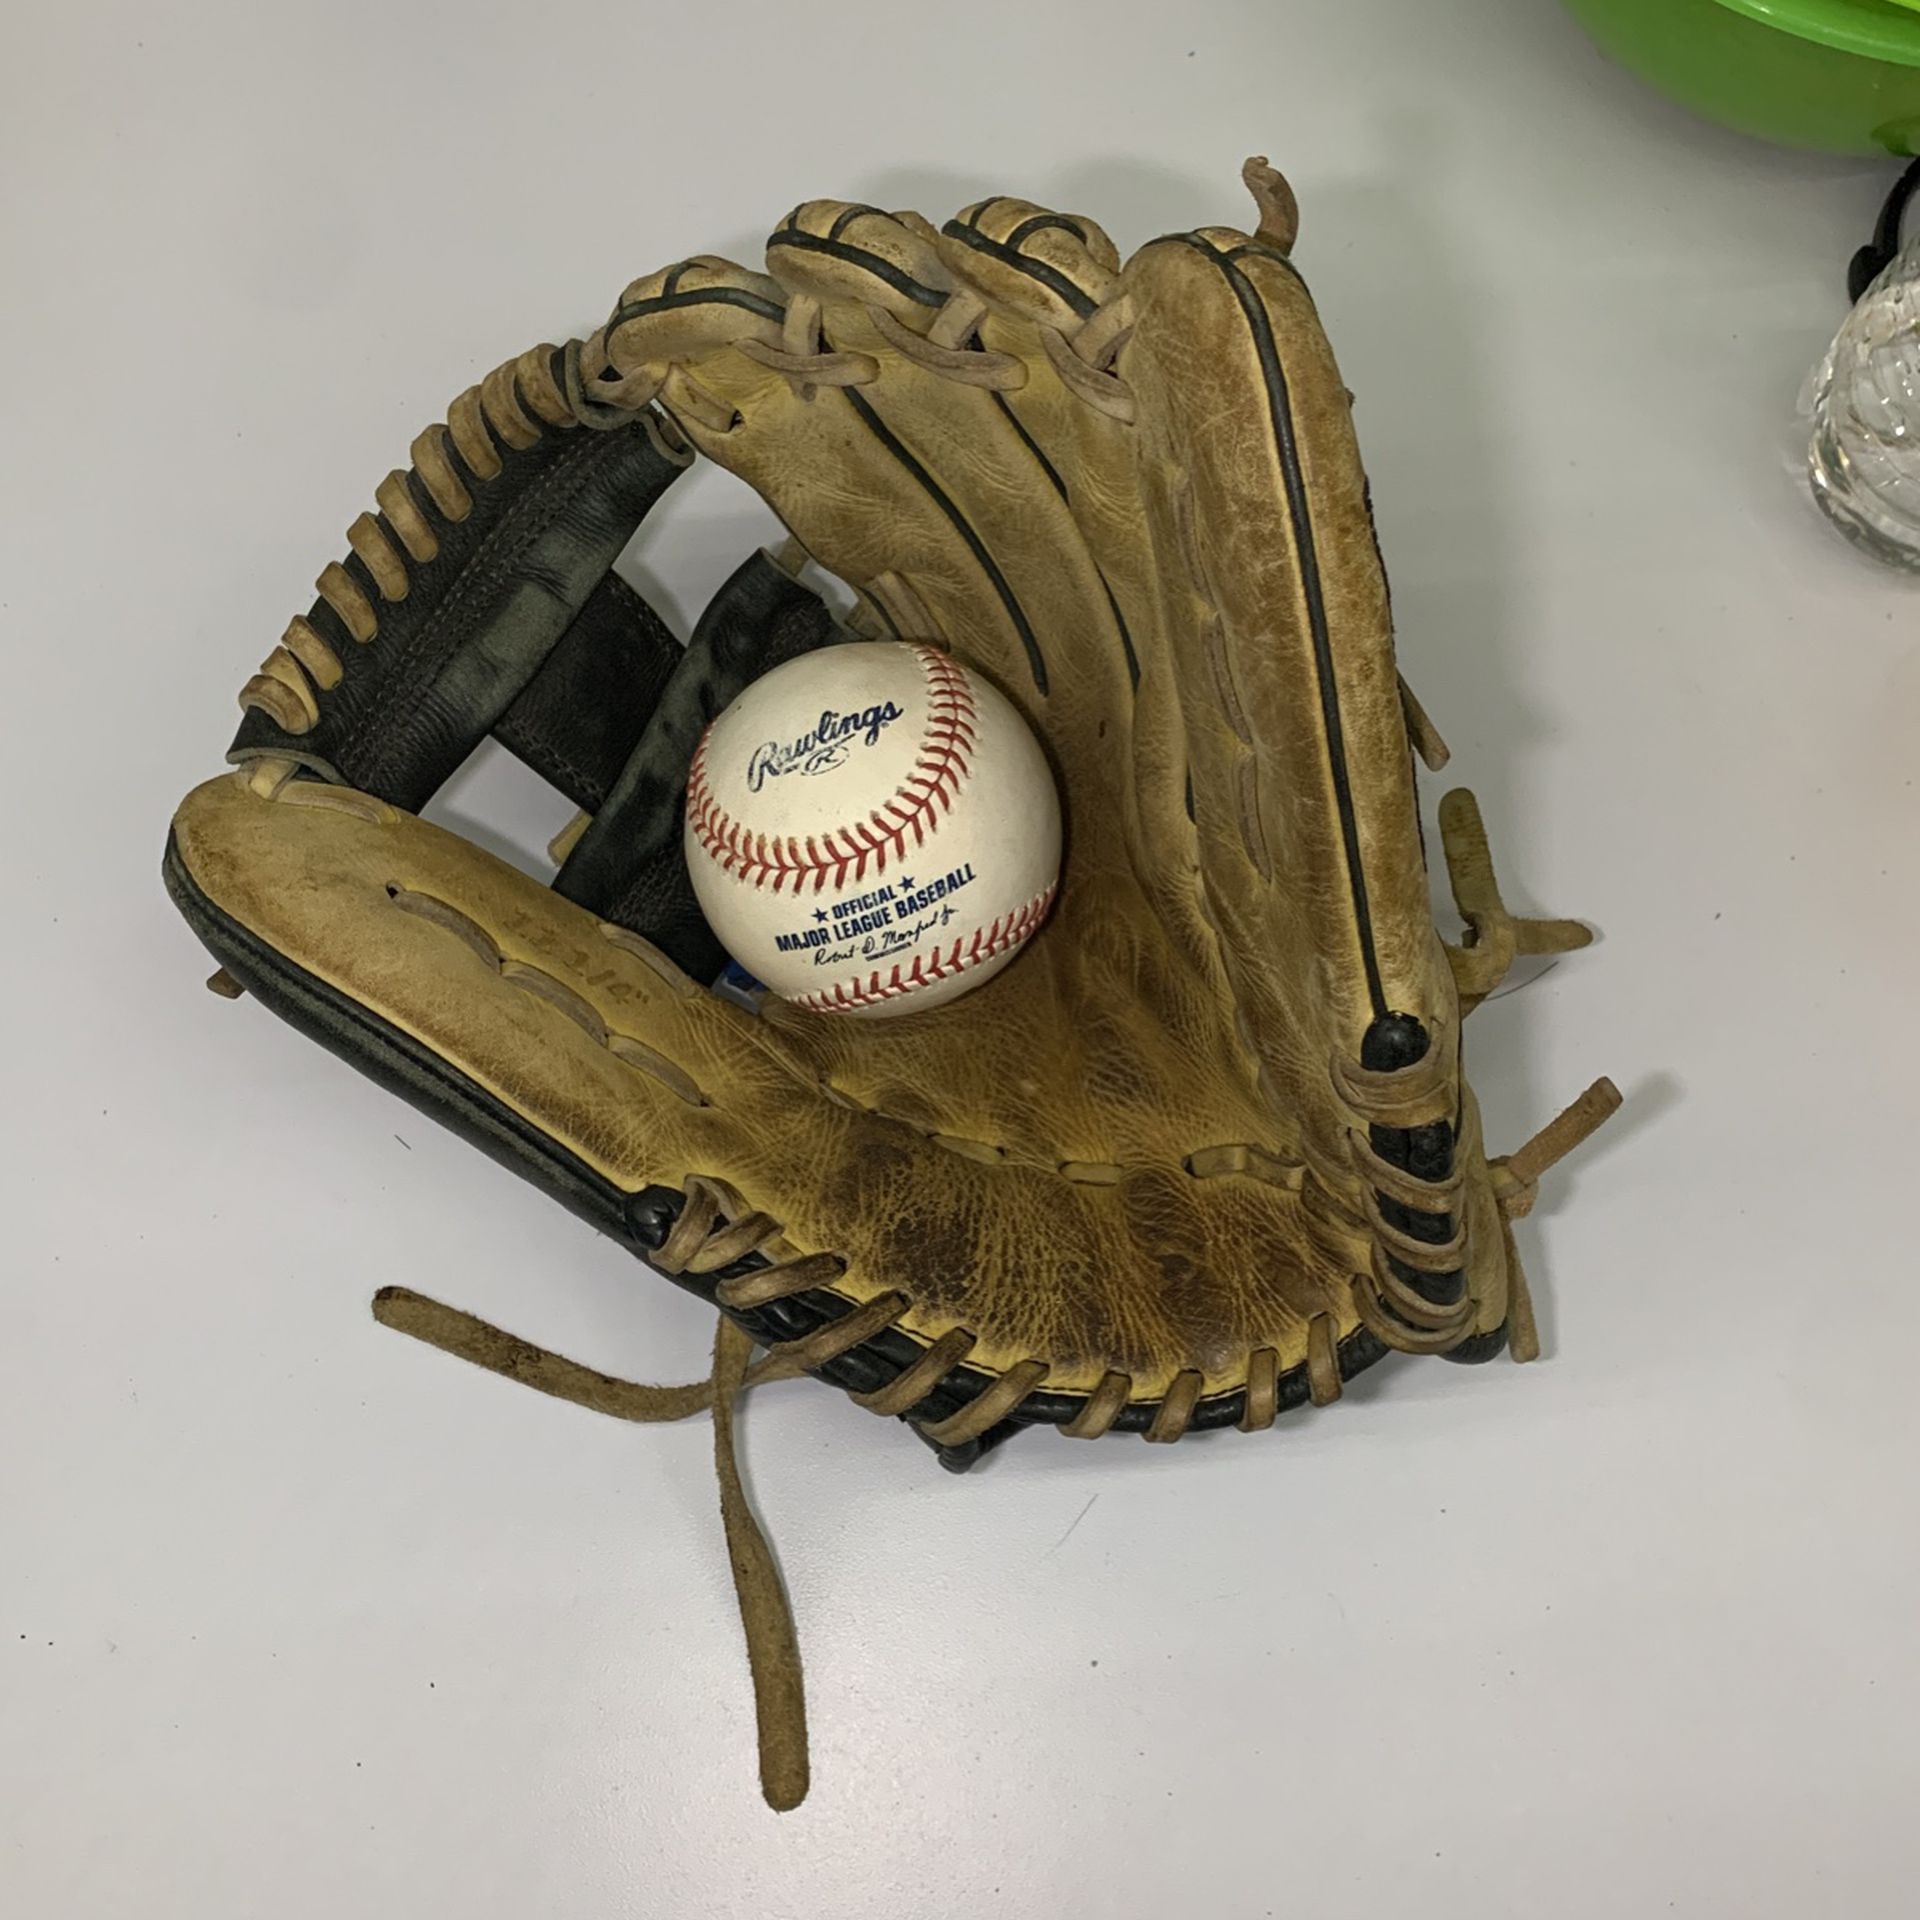 Youth Baseball Glove